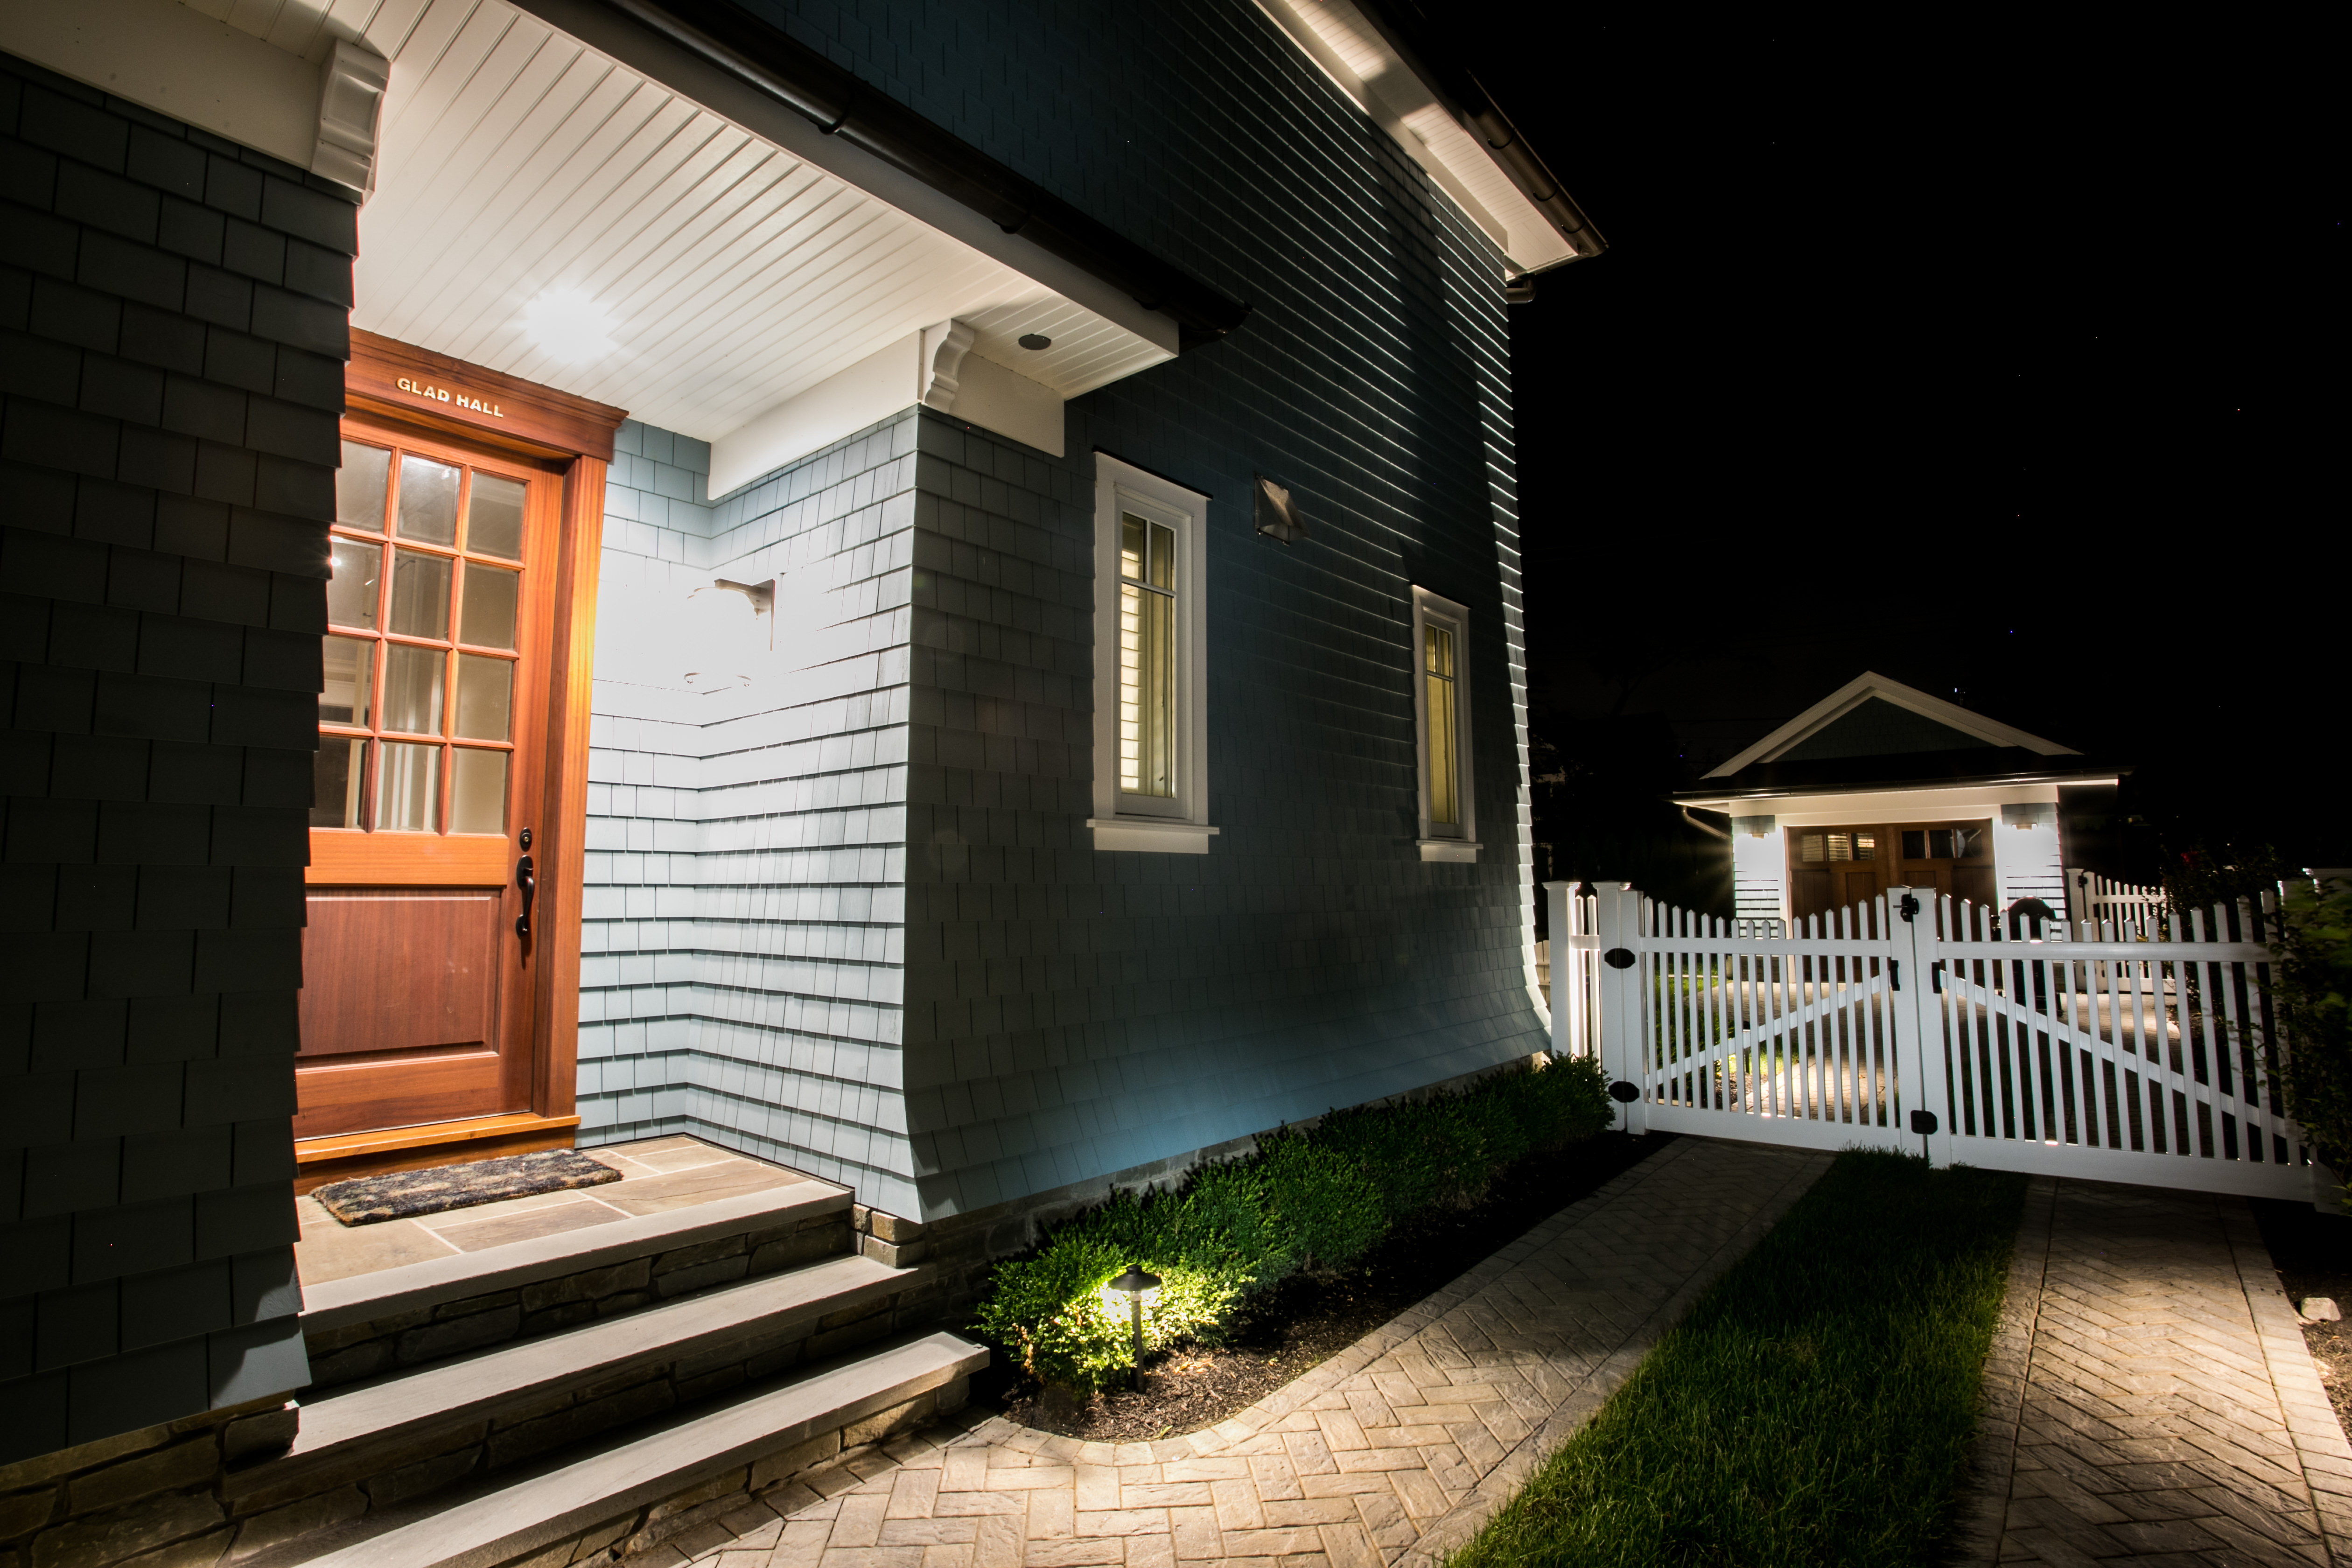 home outdoor lighting design